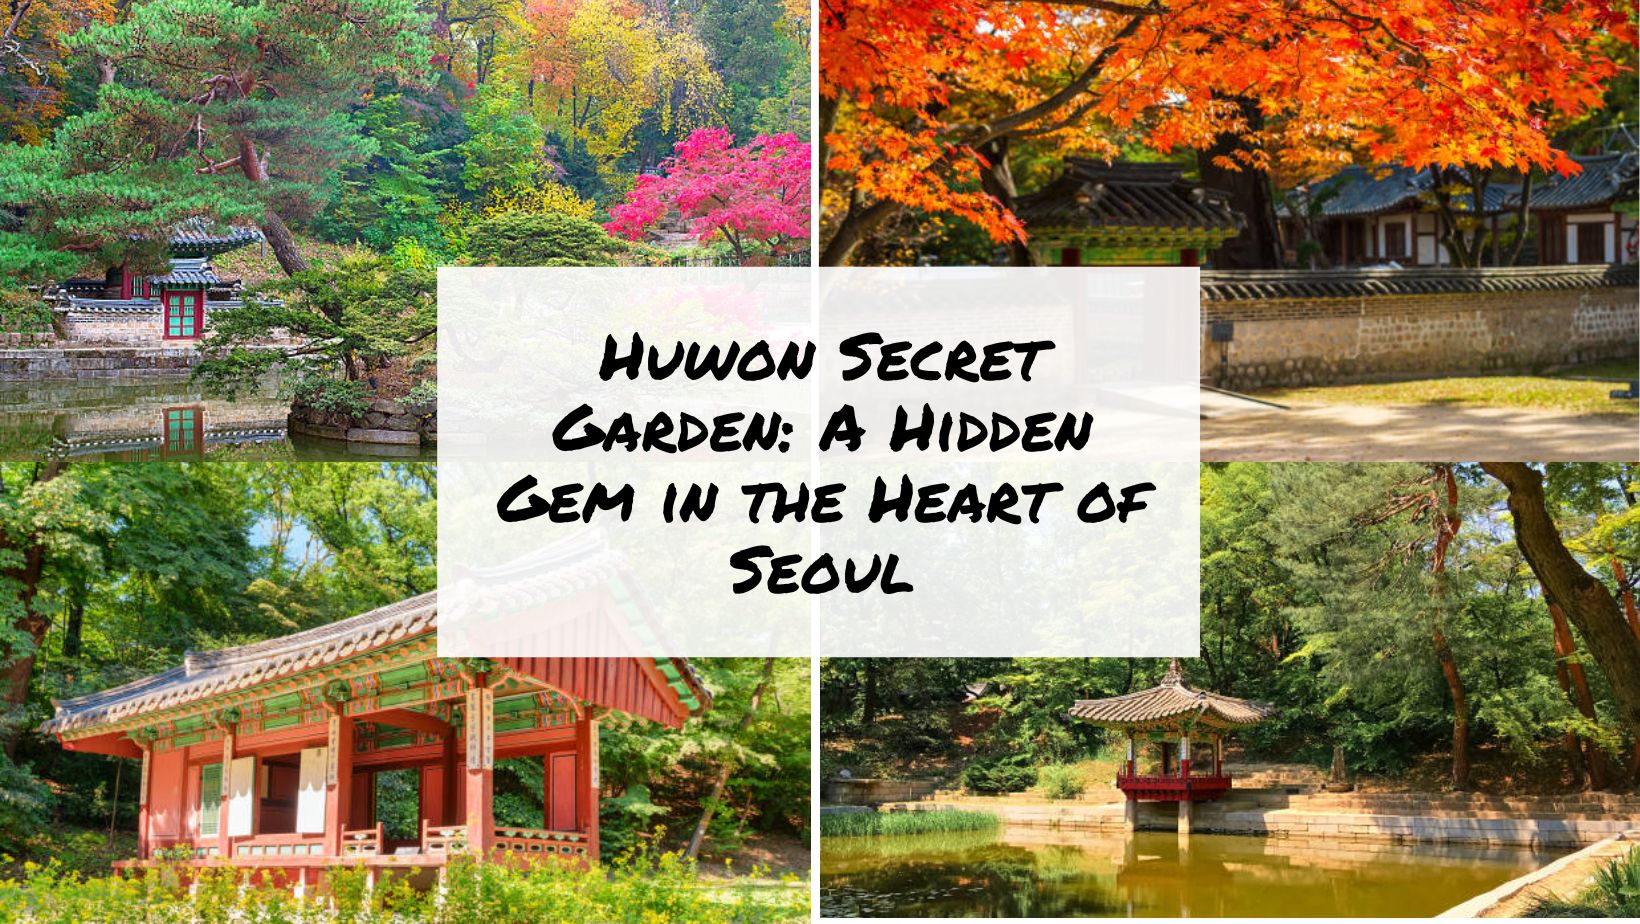 Huwon Secret Garden A Hidden Gem in the Heart of Seoul